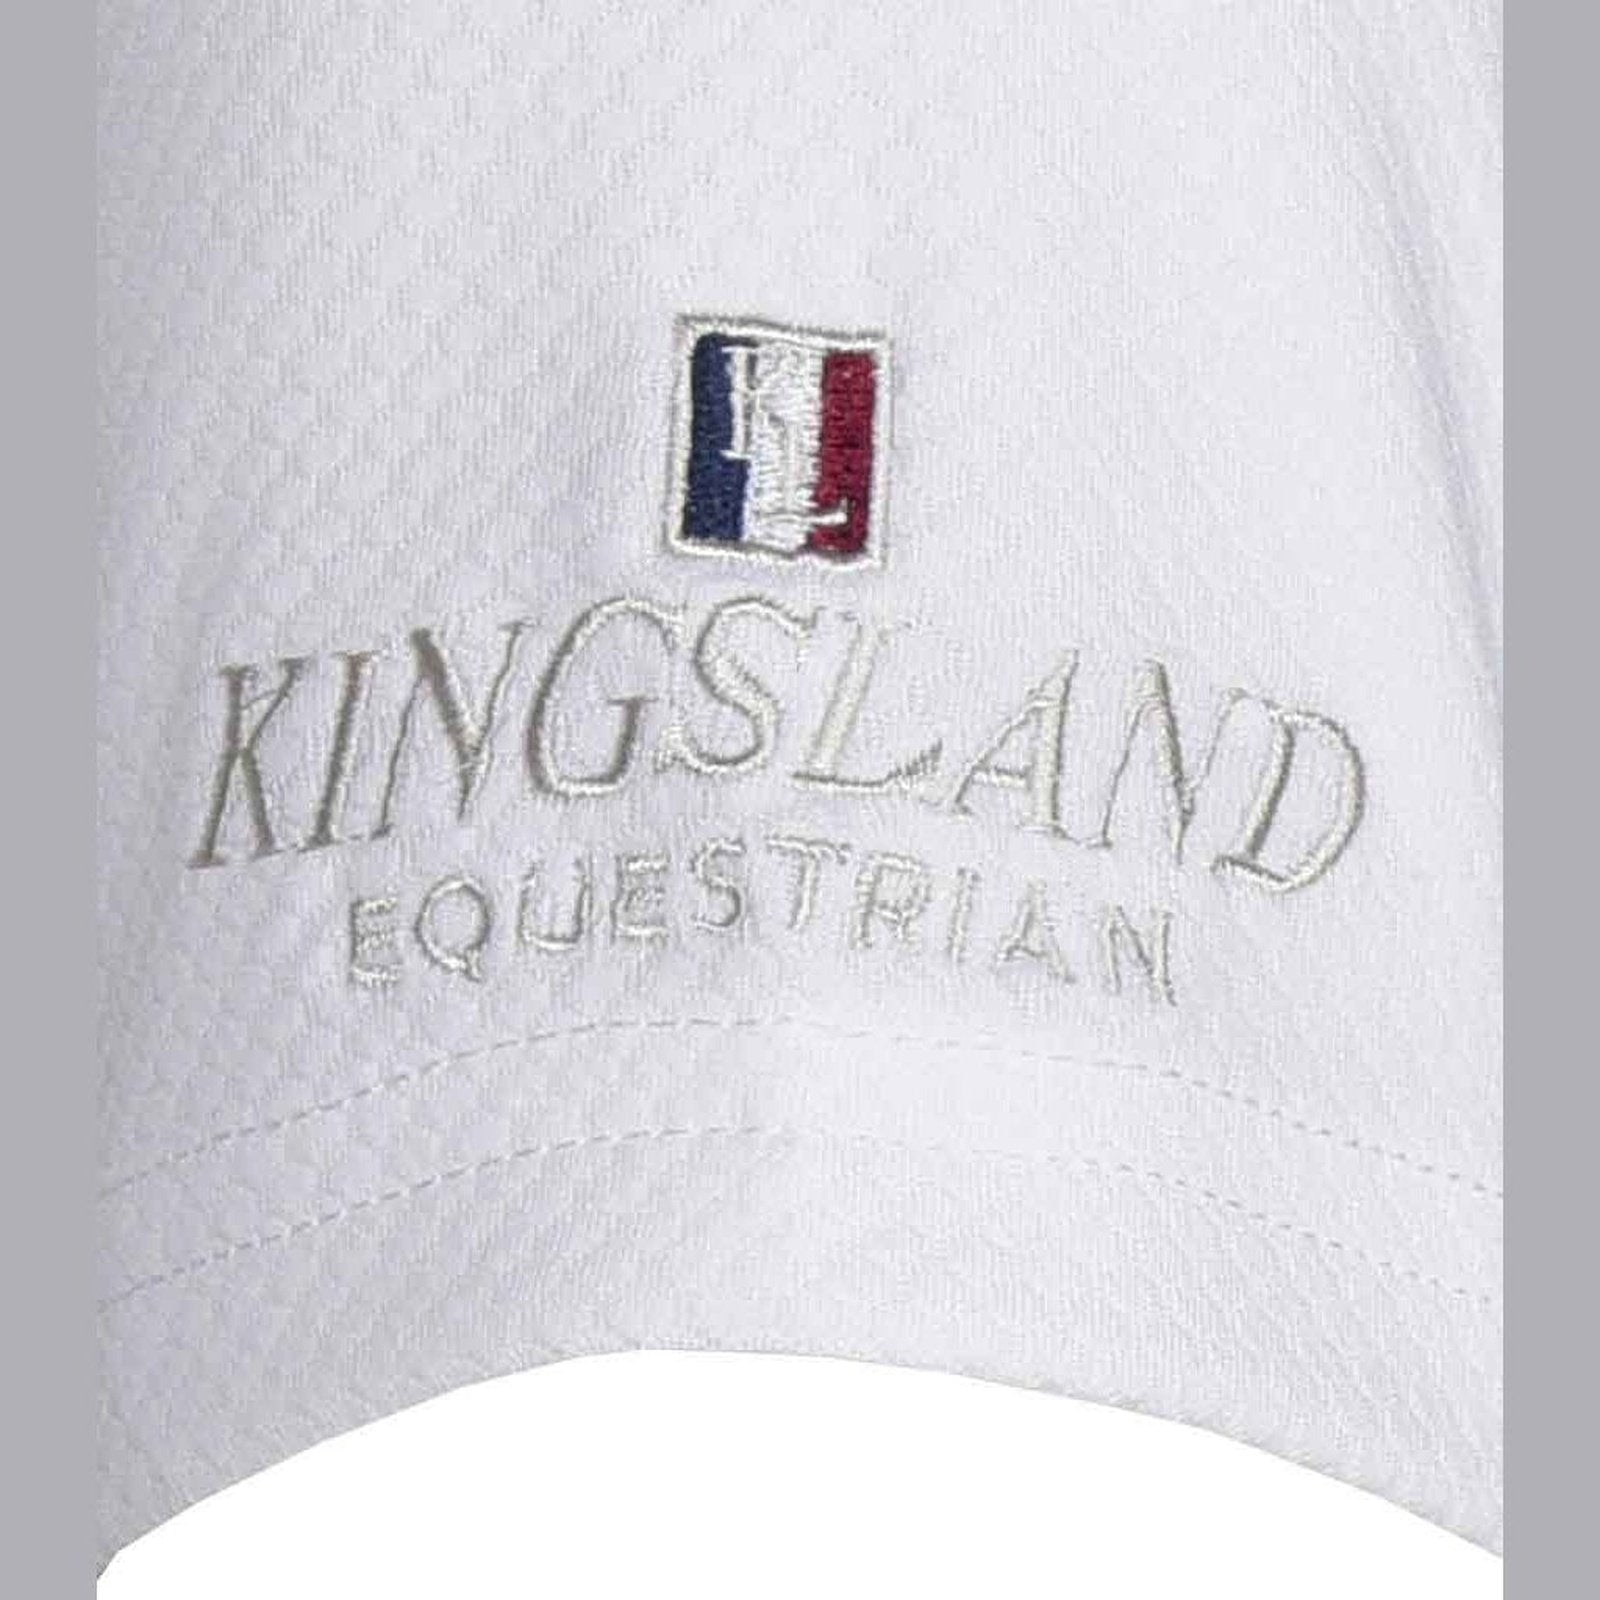 Kingsland Classic kurzärmliges Turniershirt für Jungen in weiß bei SP-Reitsport Kingsland bei SP-Reitsport